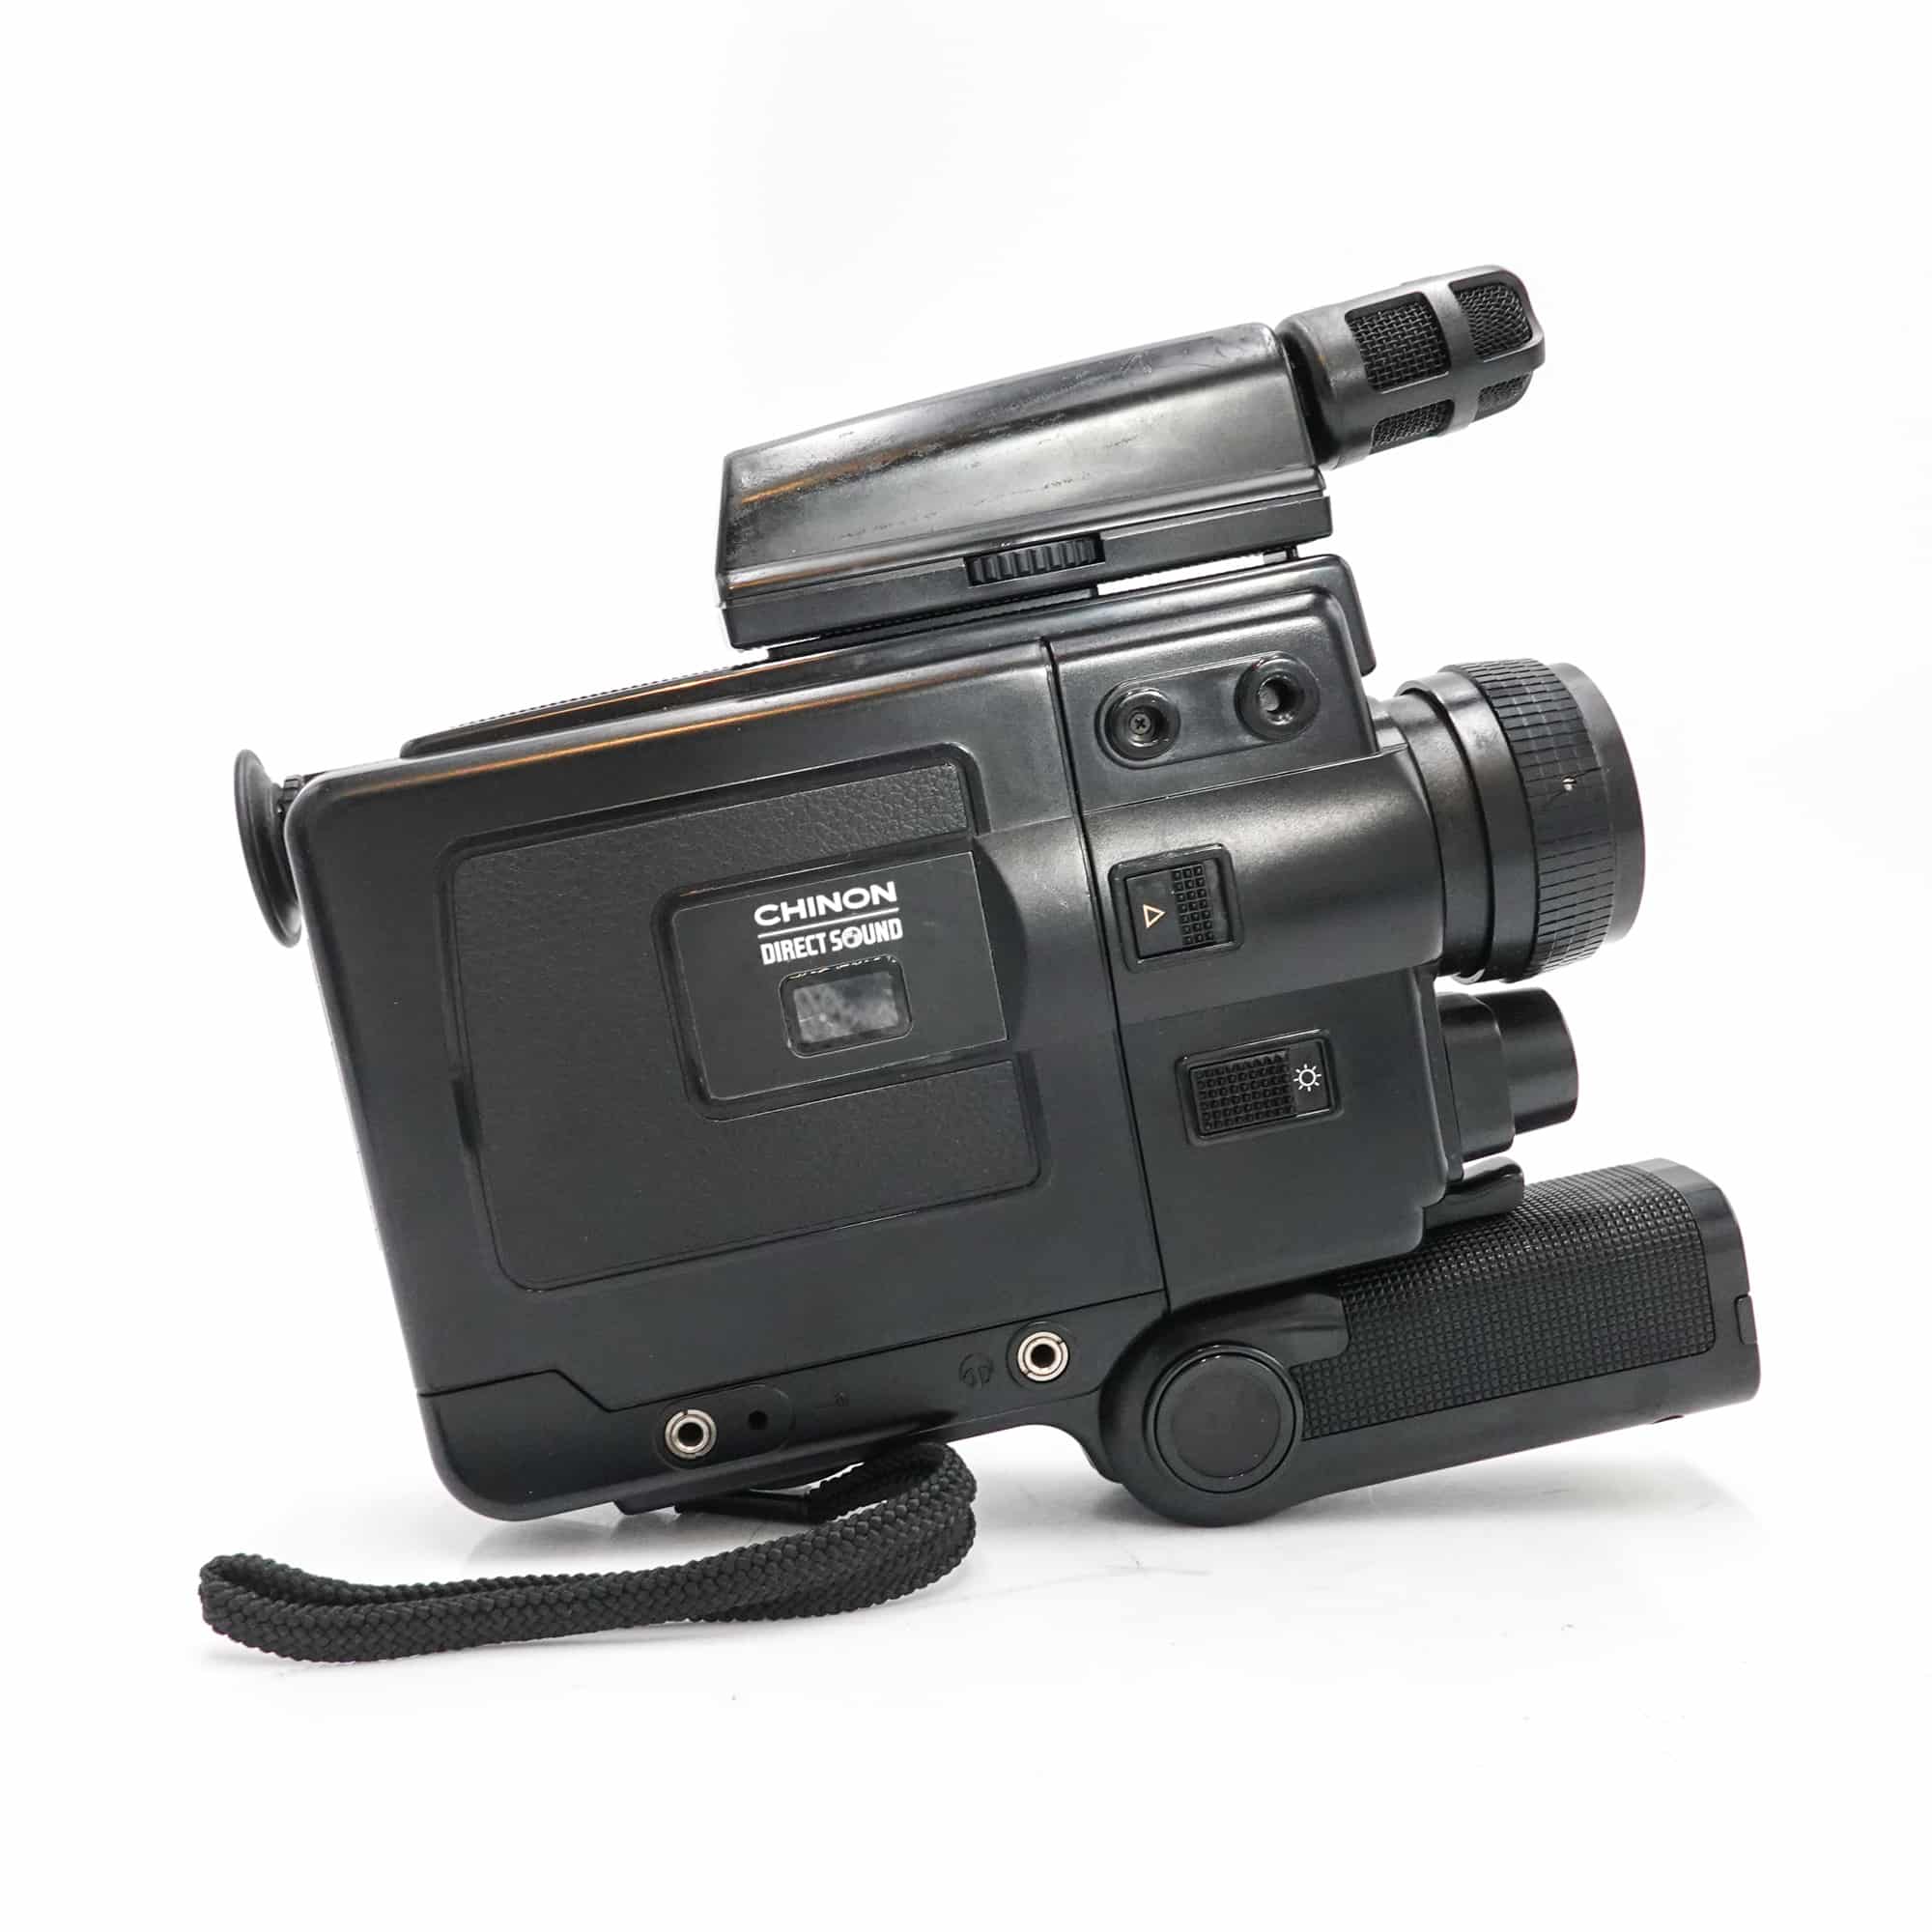 Chinon 20P XL Super 8 Camera